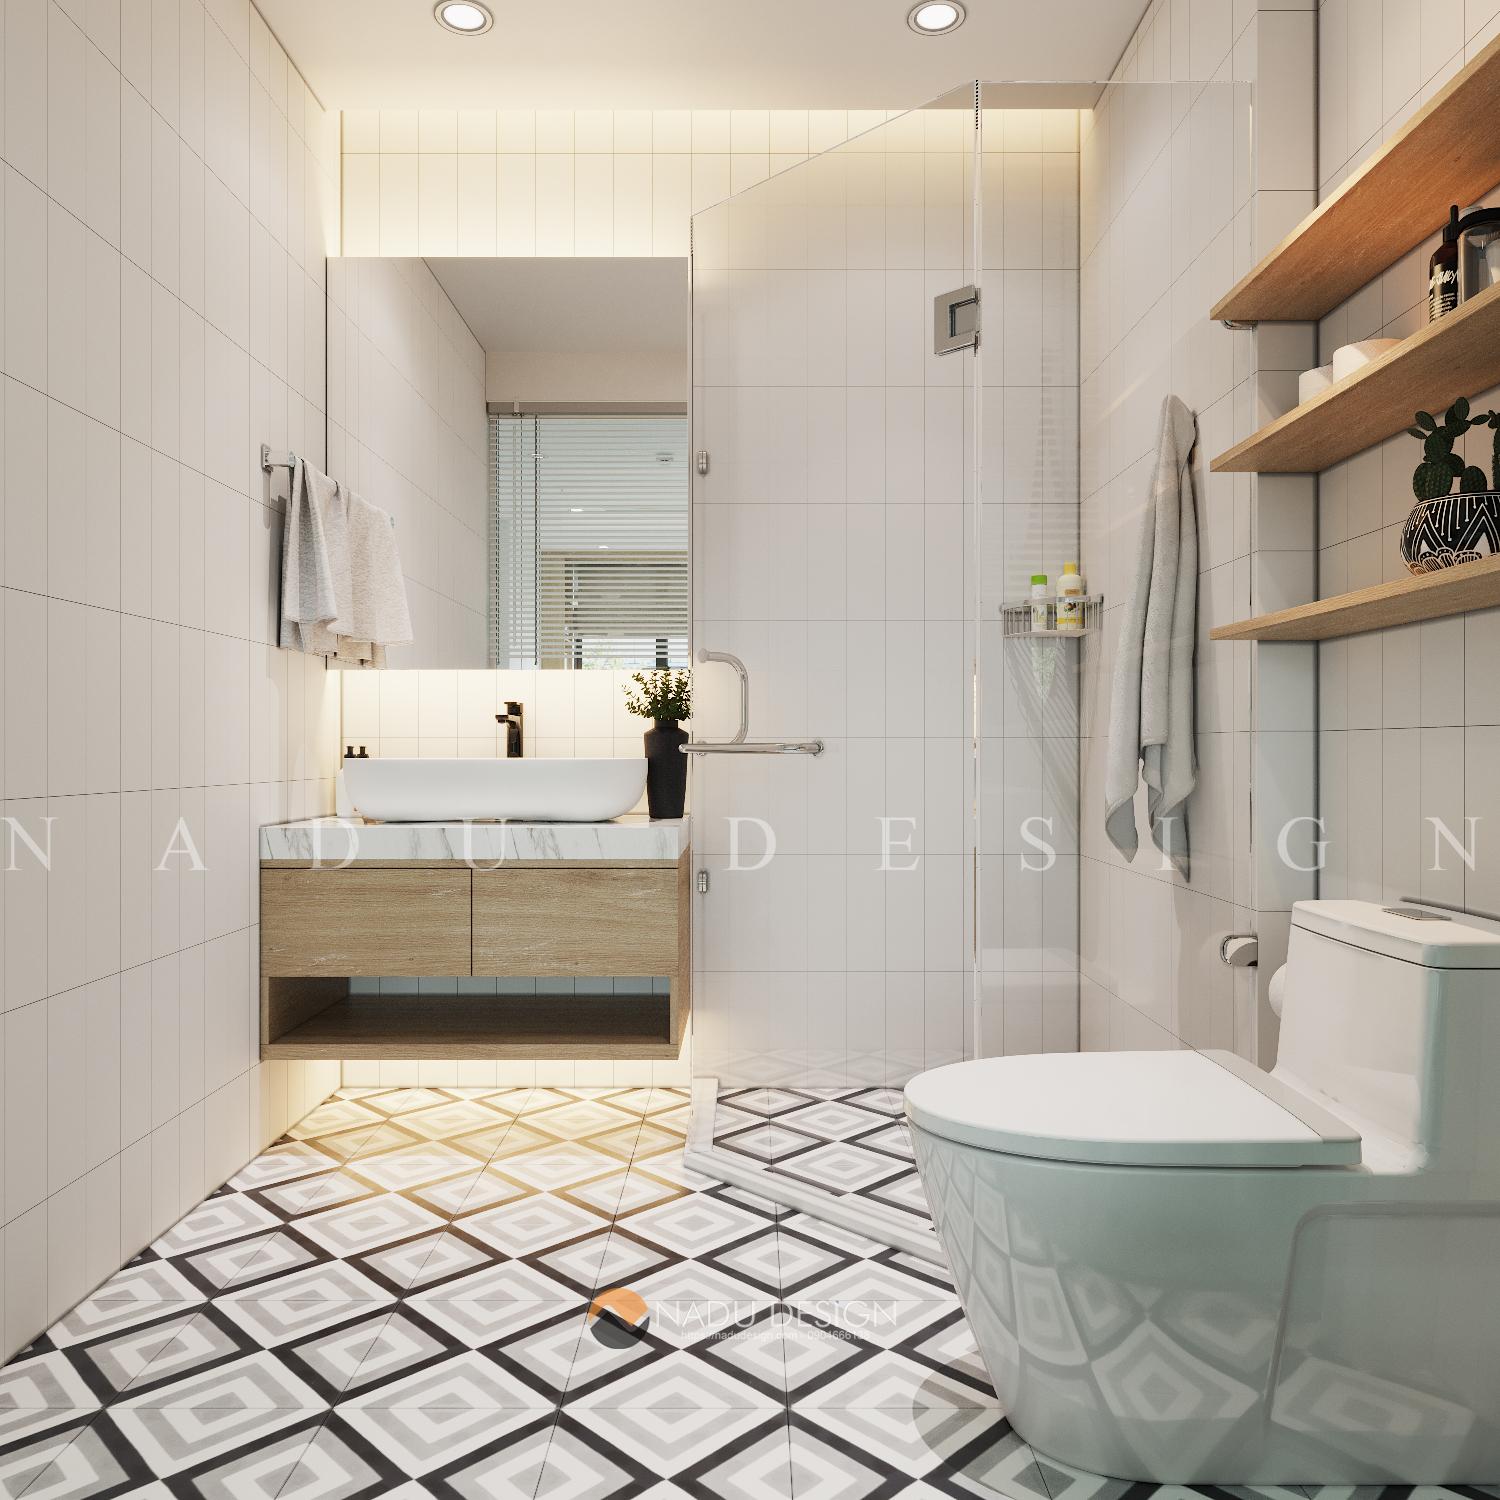 Với phòng tắm 4m2 sang trọng, bạn sẽ được trải nghiệm sự tiện nghi và đầy đủ tiện ích, từ những chi tiết nhỏ đến thiết bị hiện đại và sang trọng.